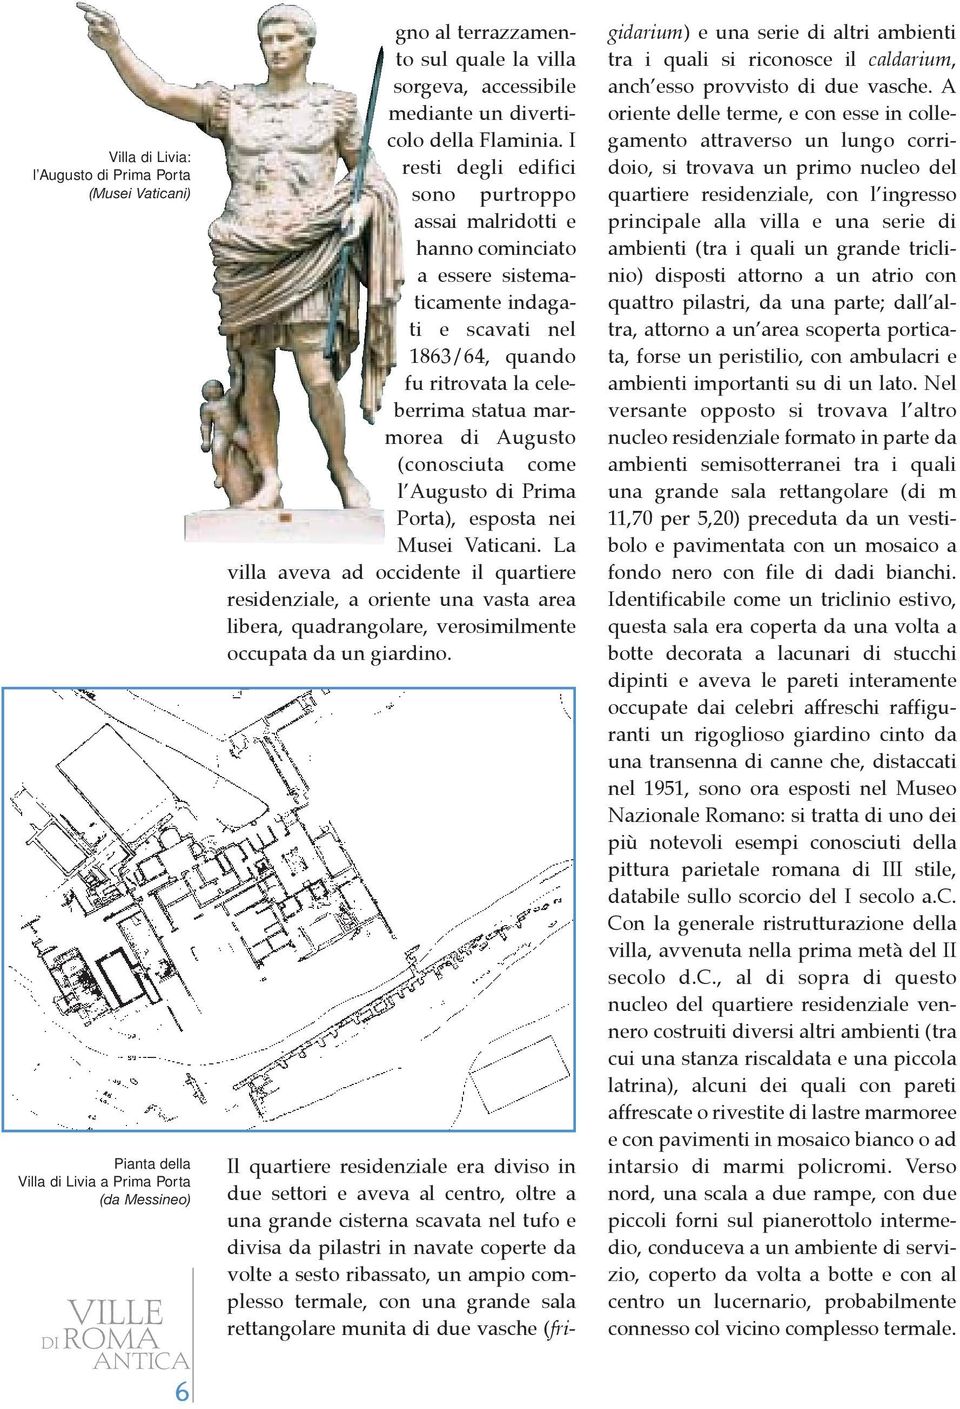 I resti degli edifici sono purtroppo assai malridotti e hanno cominciato a essere sistematicamente indagati e scavati nel 1863/64, quando fu ritrovata la celeberrima statua marmorea di Augusto